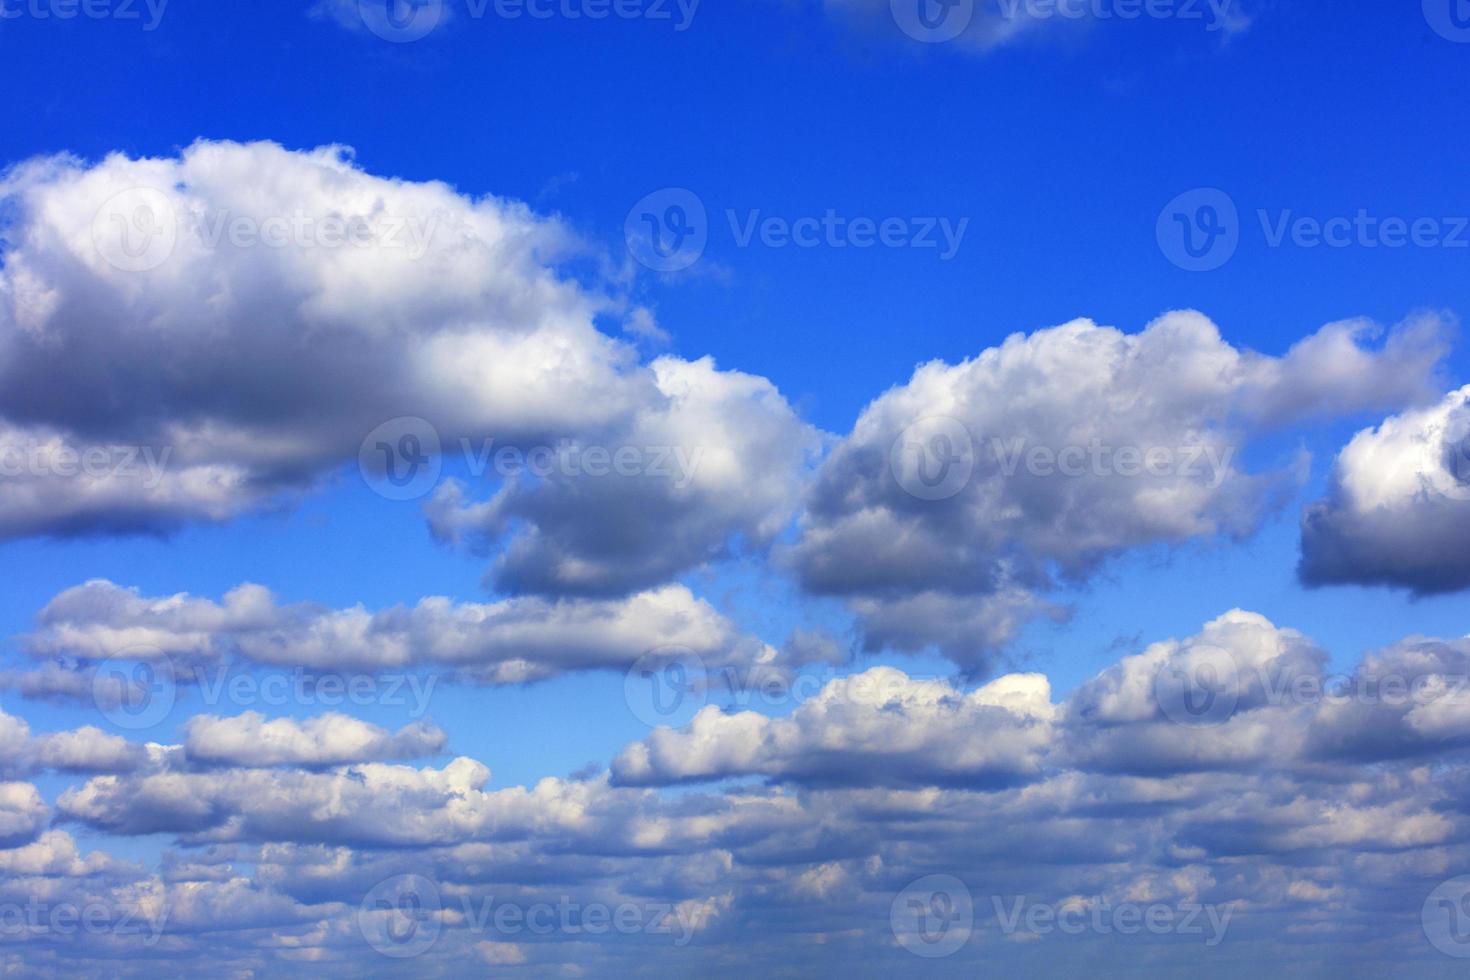 exuberantes nubes blancas y grises cubren un brillante cielo azul saturado. foto